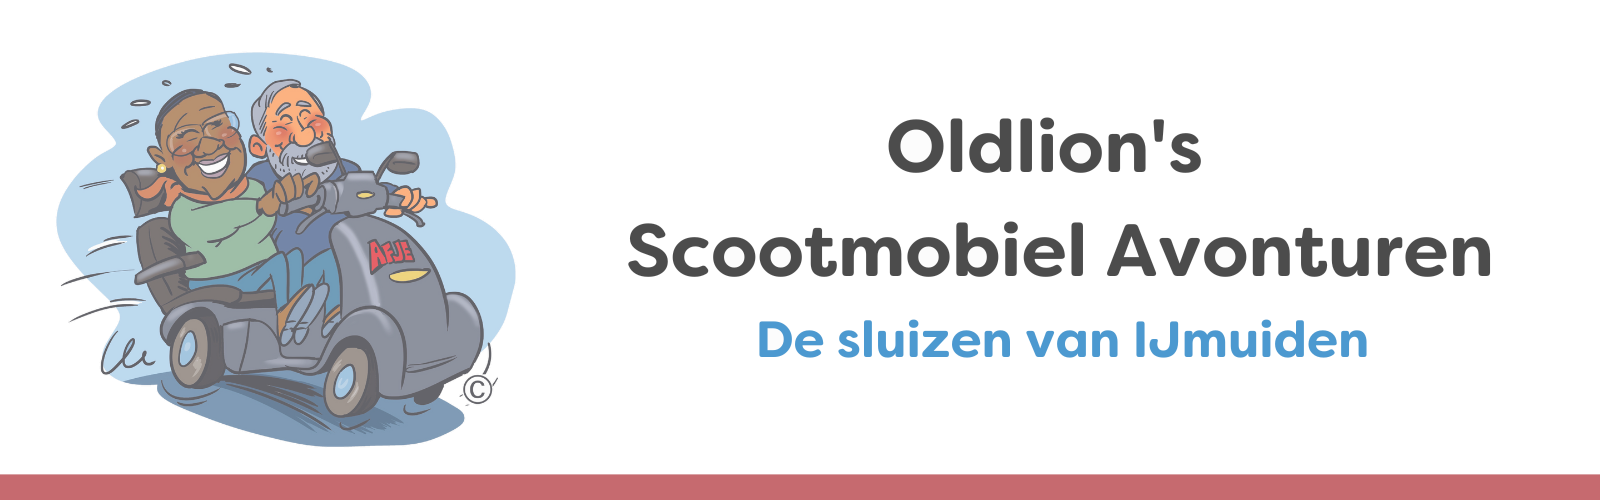 mango mobility - oldlion's scootmobiel avonturen - de sluizen van ijmuiden